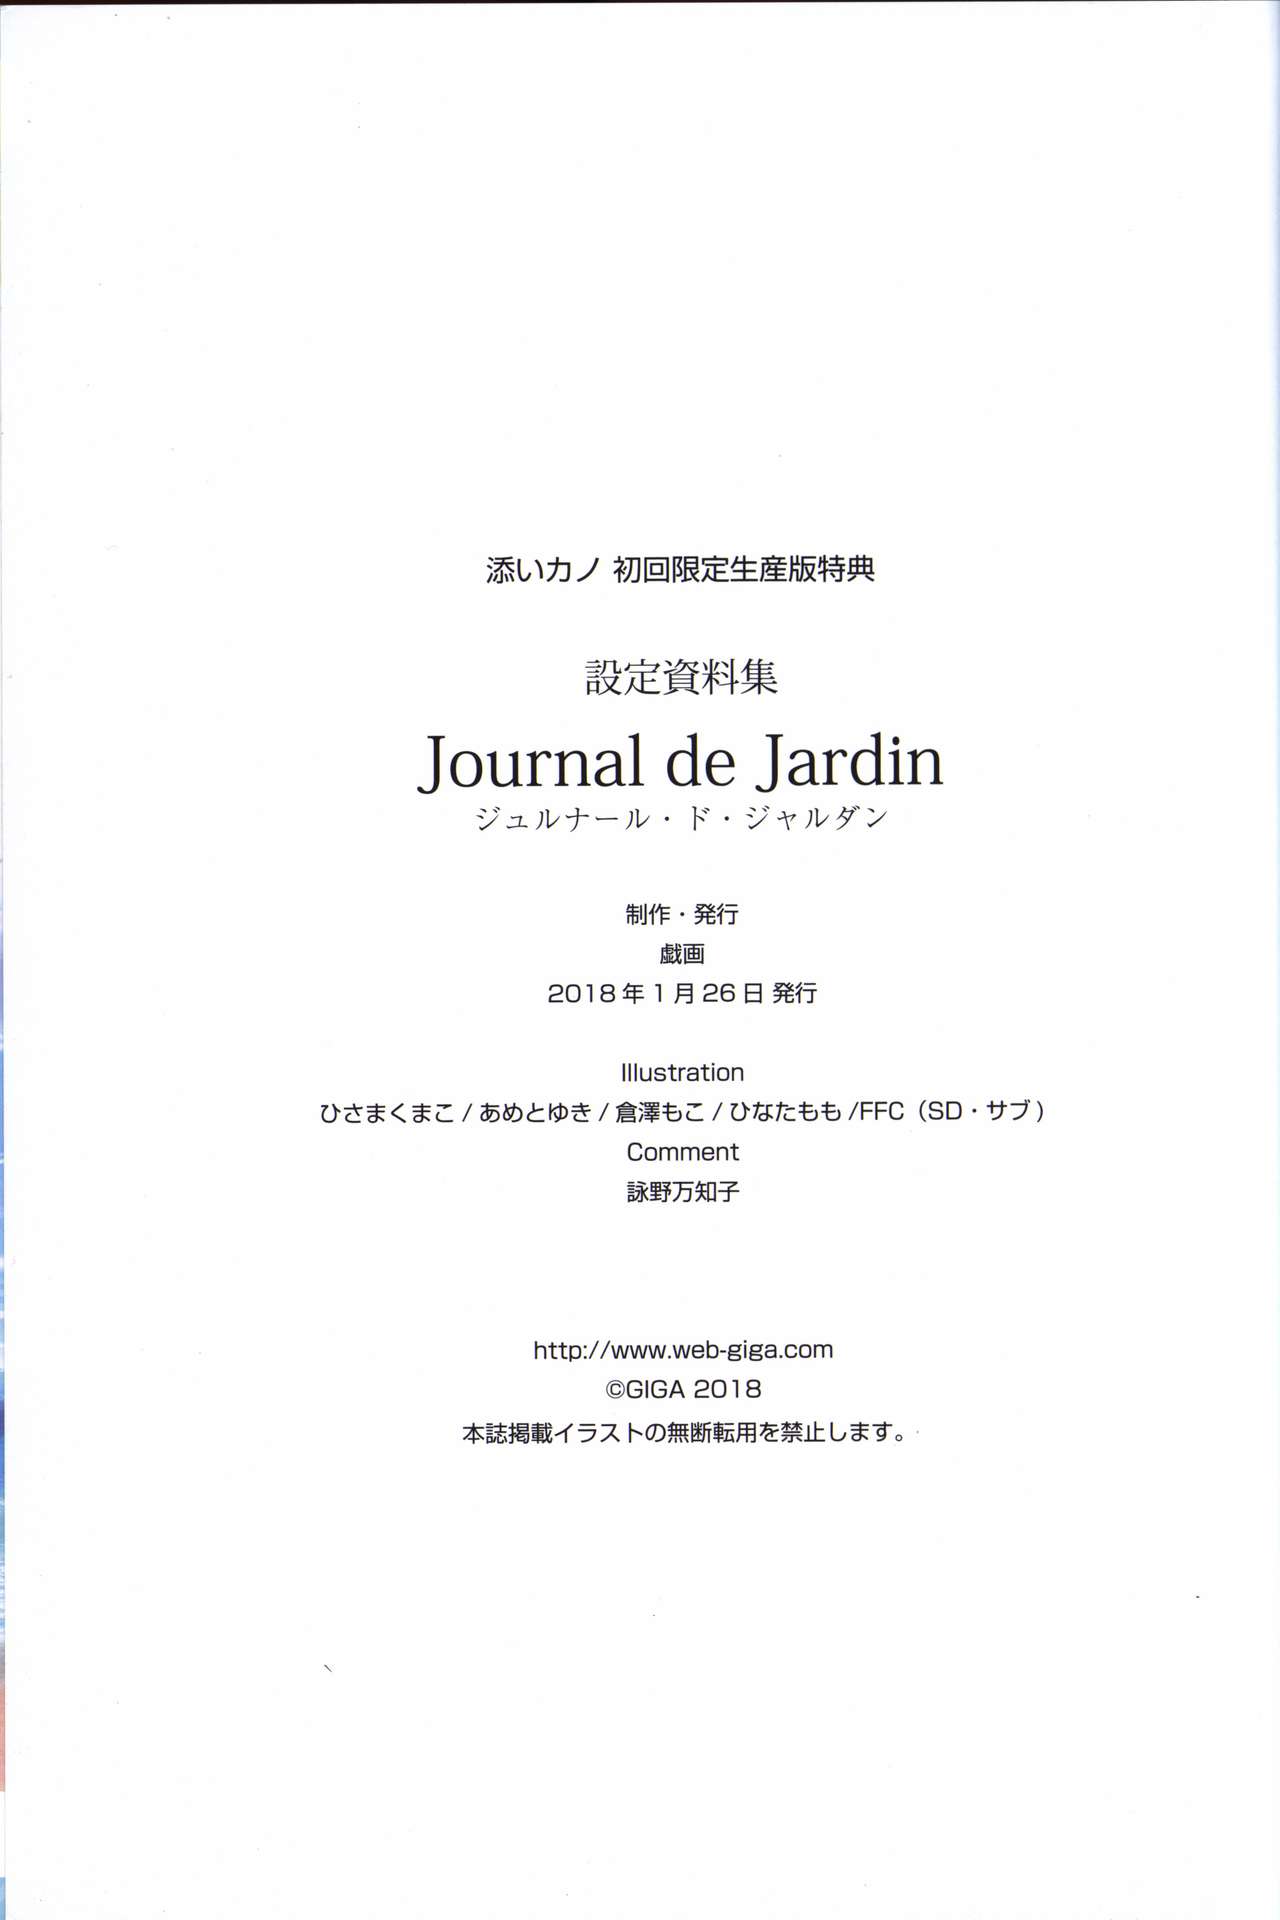 添いカノ 設定資料集 Journal de Jardin ジュルナール・ド・ジャルダン